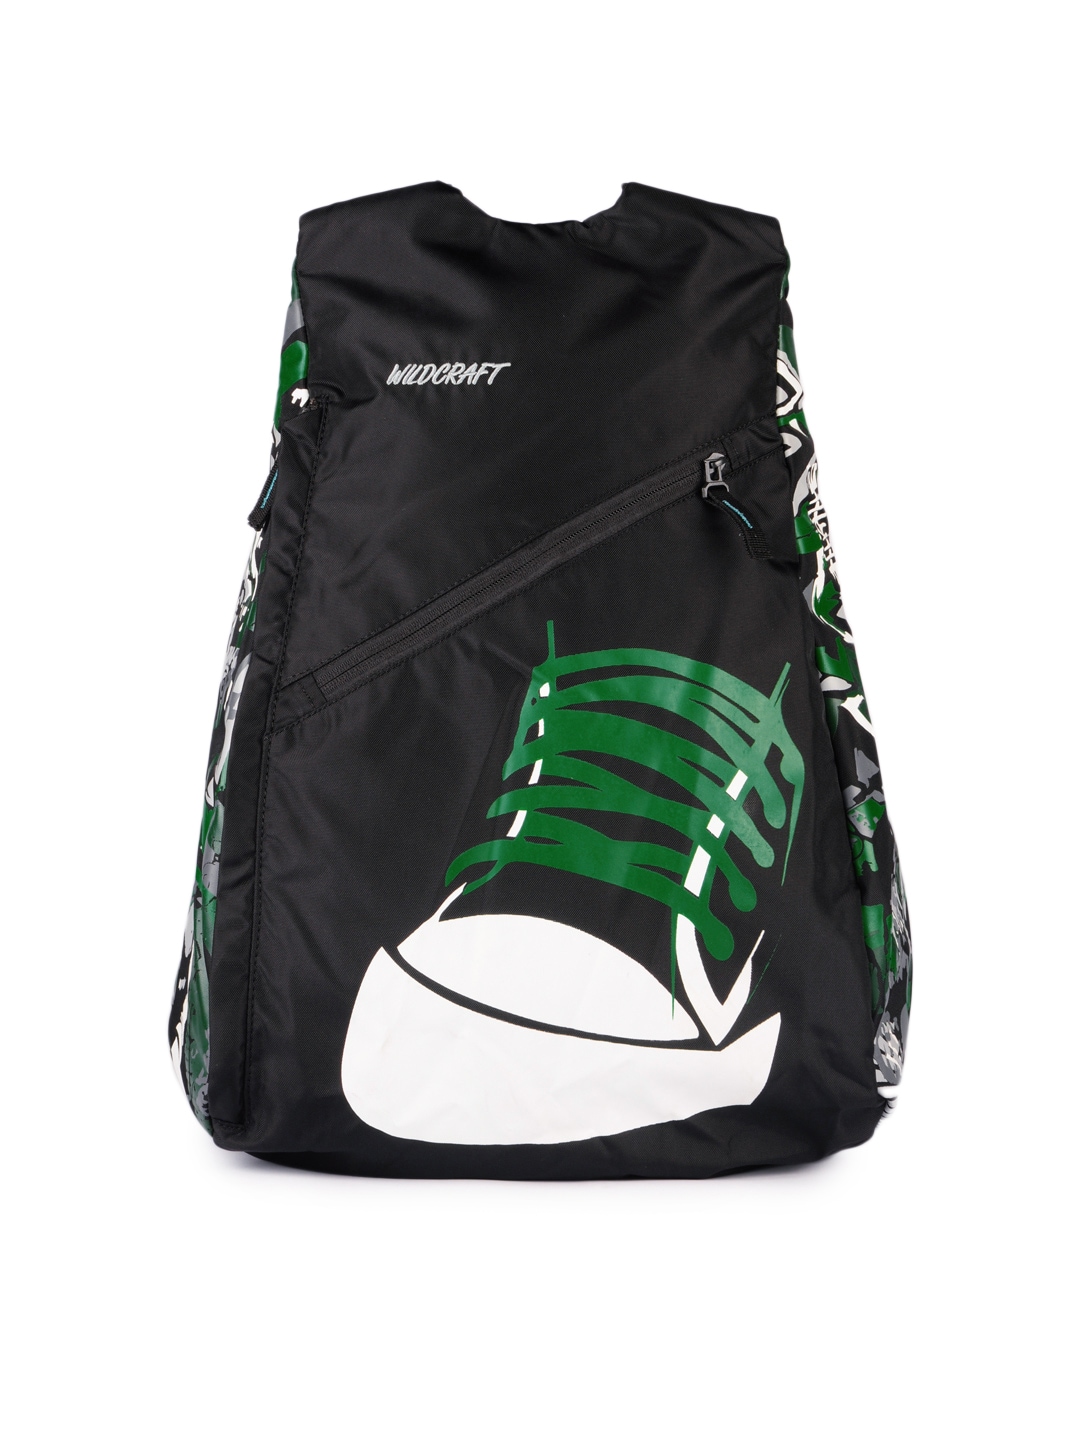 Wildcraft Unisex Black & Green Printed Backpack